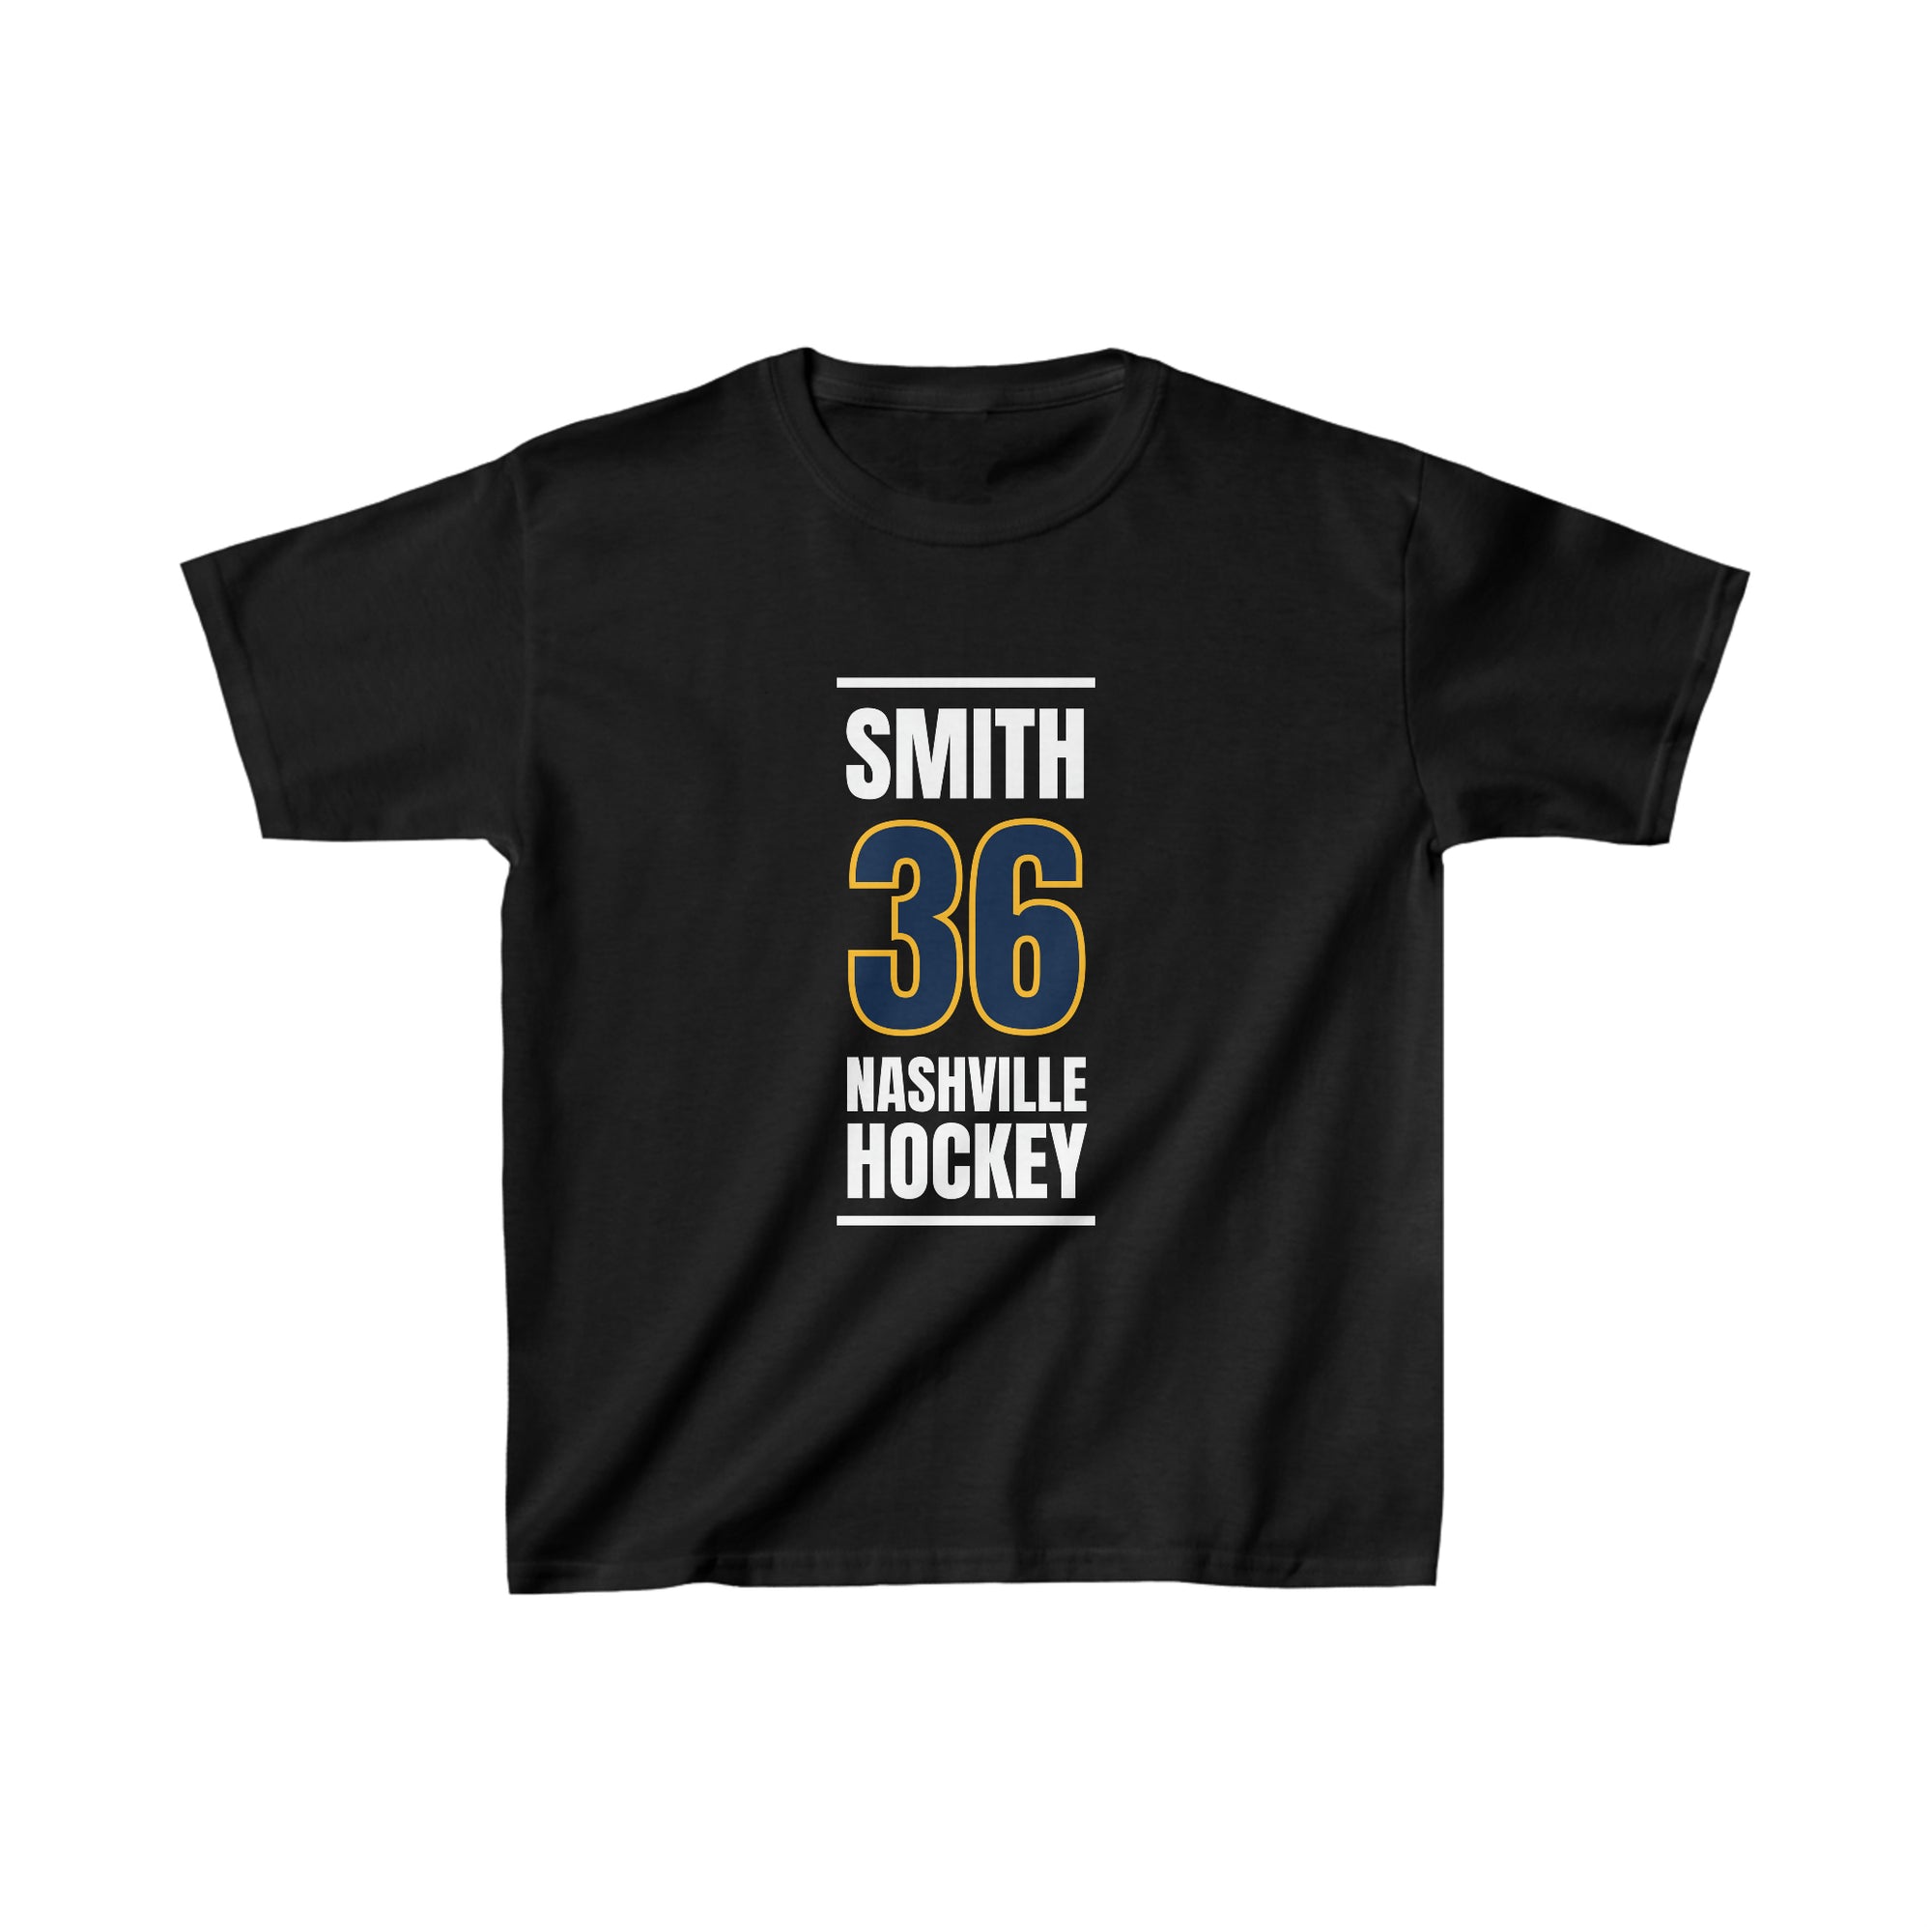 Smith 36 Nashville Hockey Navy Blue Vertical Design Kids Tee